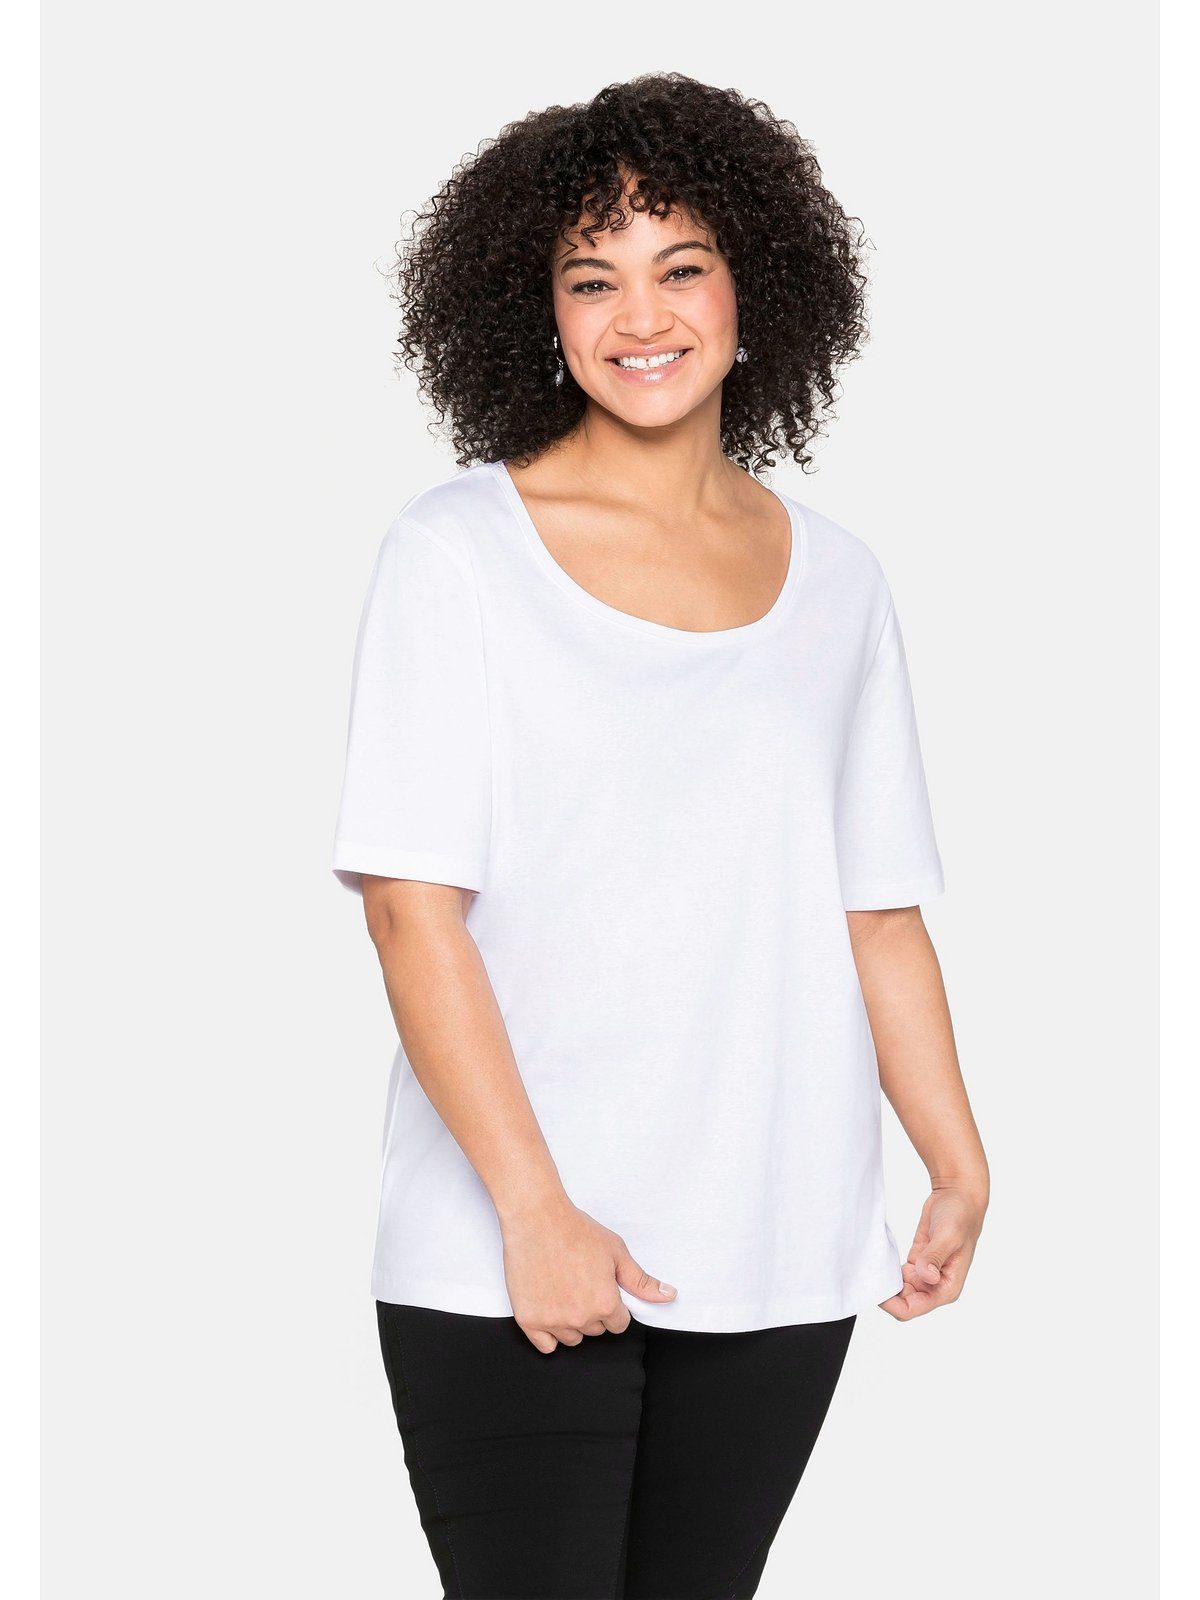 Baumwolle aus reiner weiß T-Shirt Größen Große Sheego